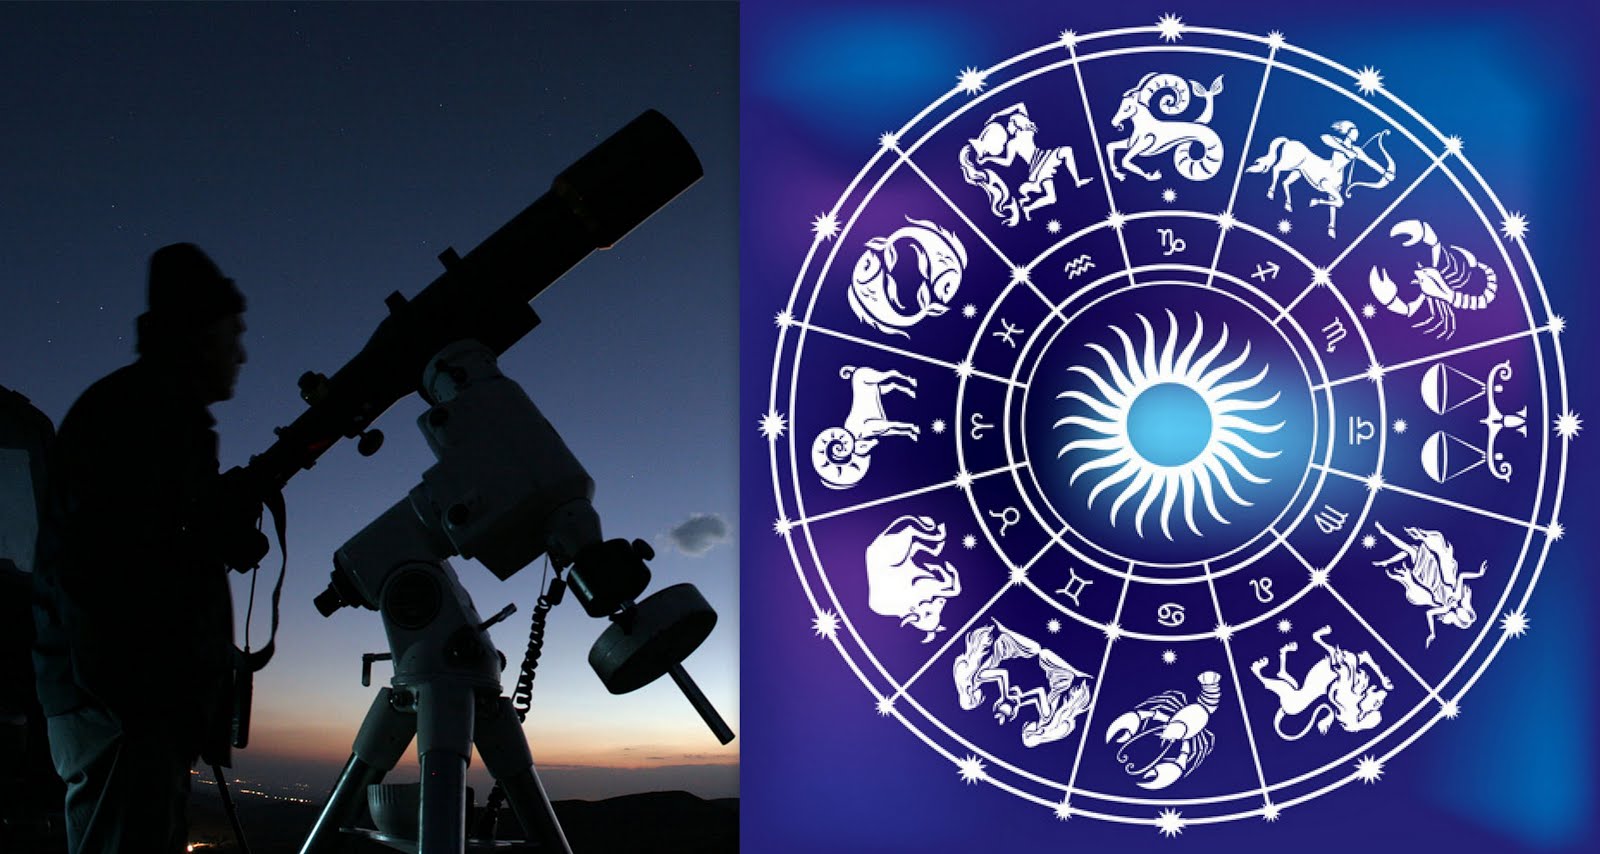 A Astrologia realmente funciona ou não?